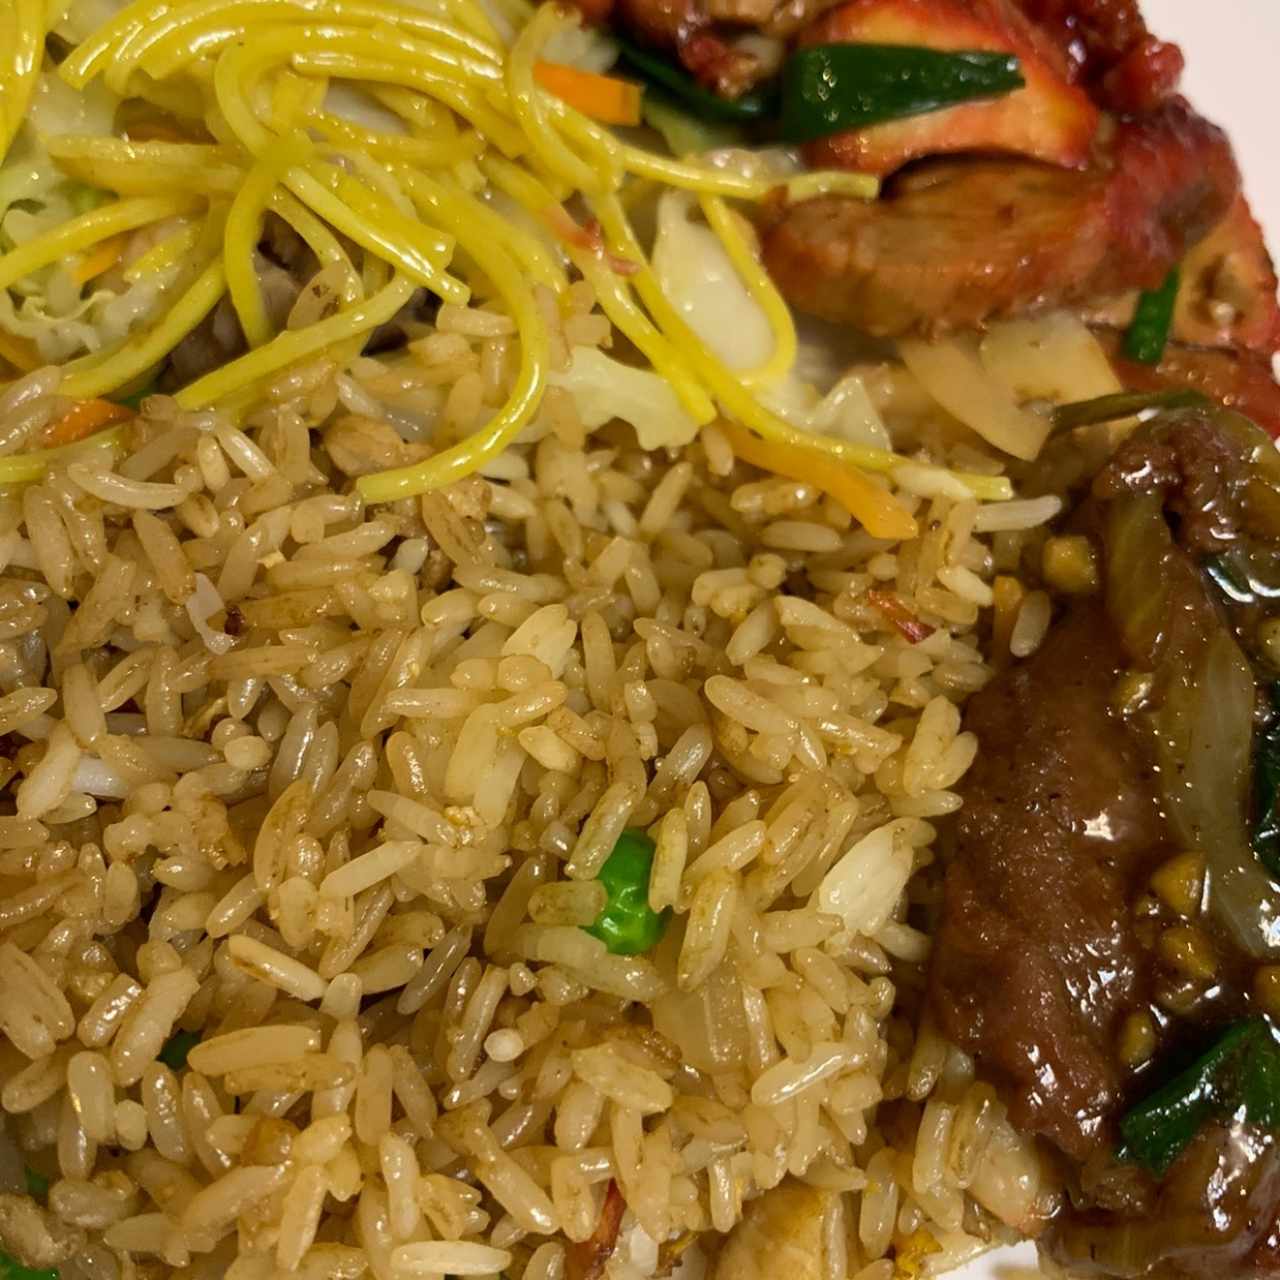 arroz fruto tradicional, show mein combinacion, carne a la plancha y puerco asado